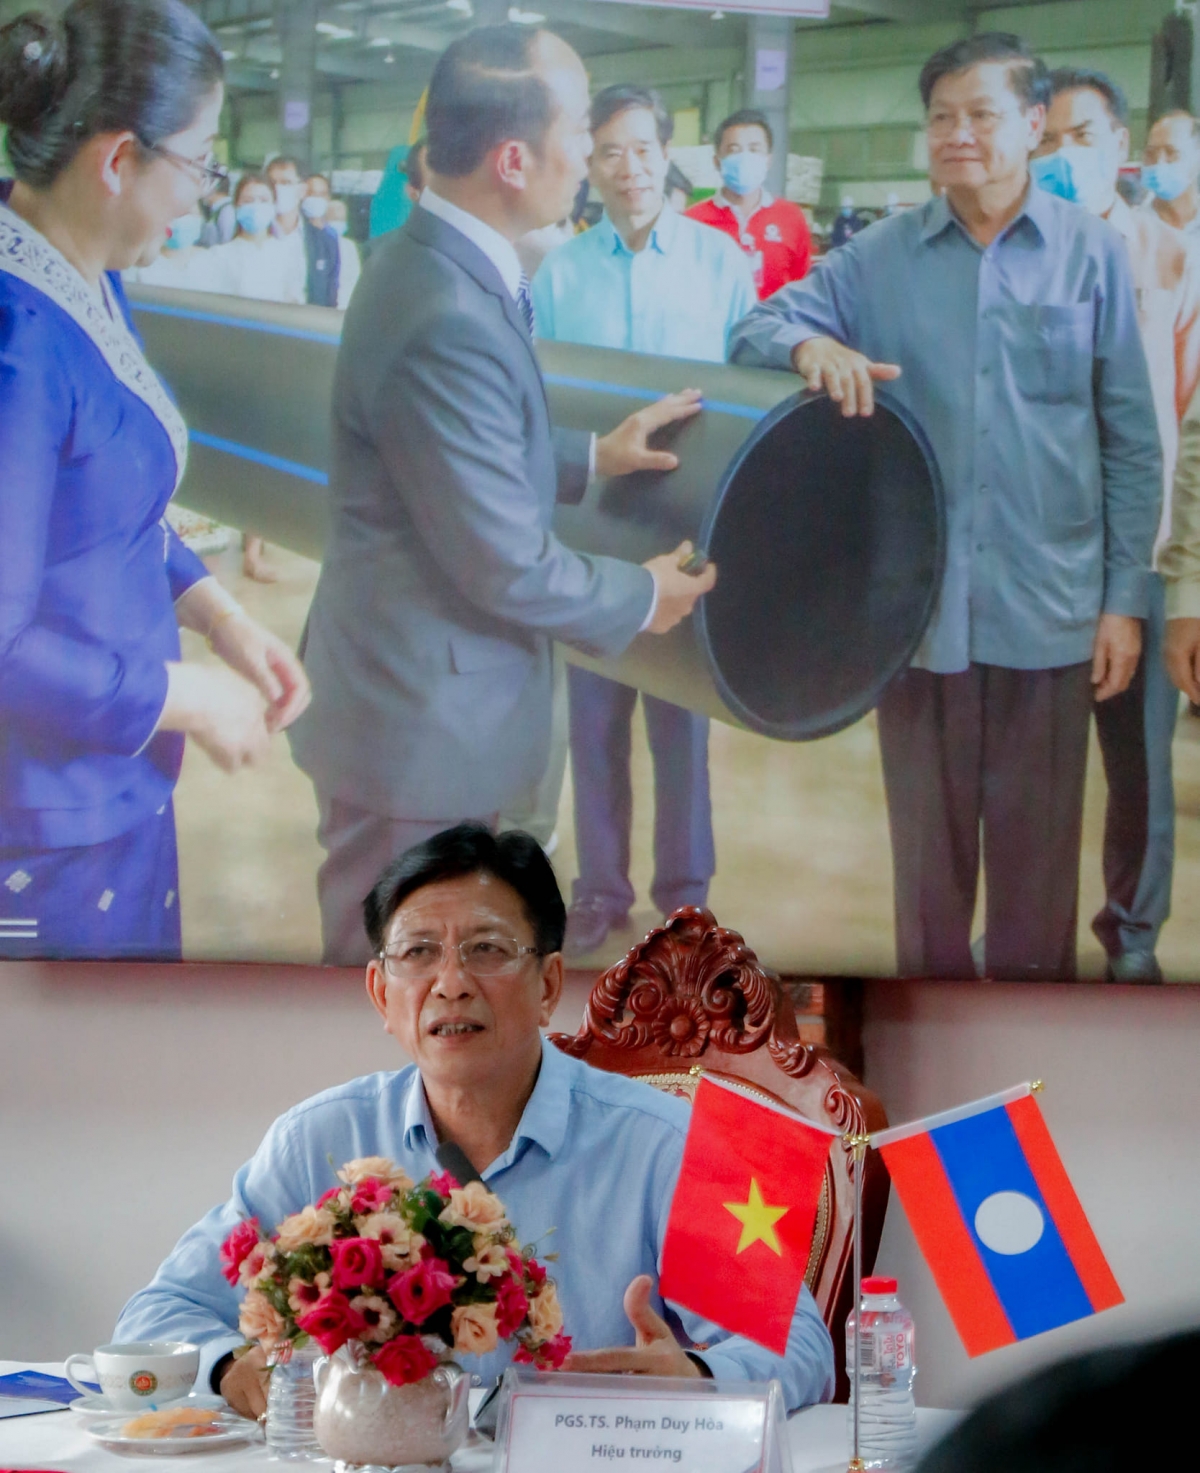 PGS.TS Phạm Duy Hoà - Hiệu trưởng Trường ĐH Xây dựng Hà Nội phát biểu tại buổi làm việc với tập đoàn Toyo